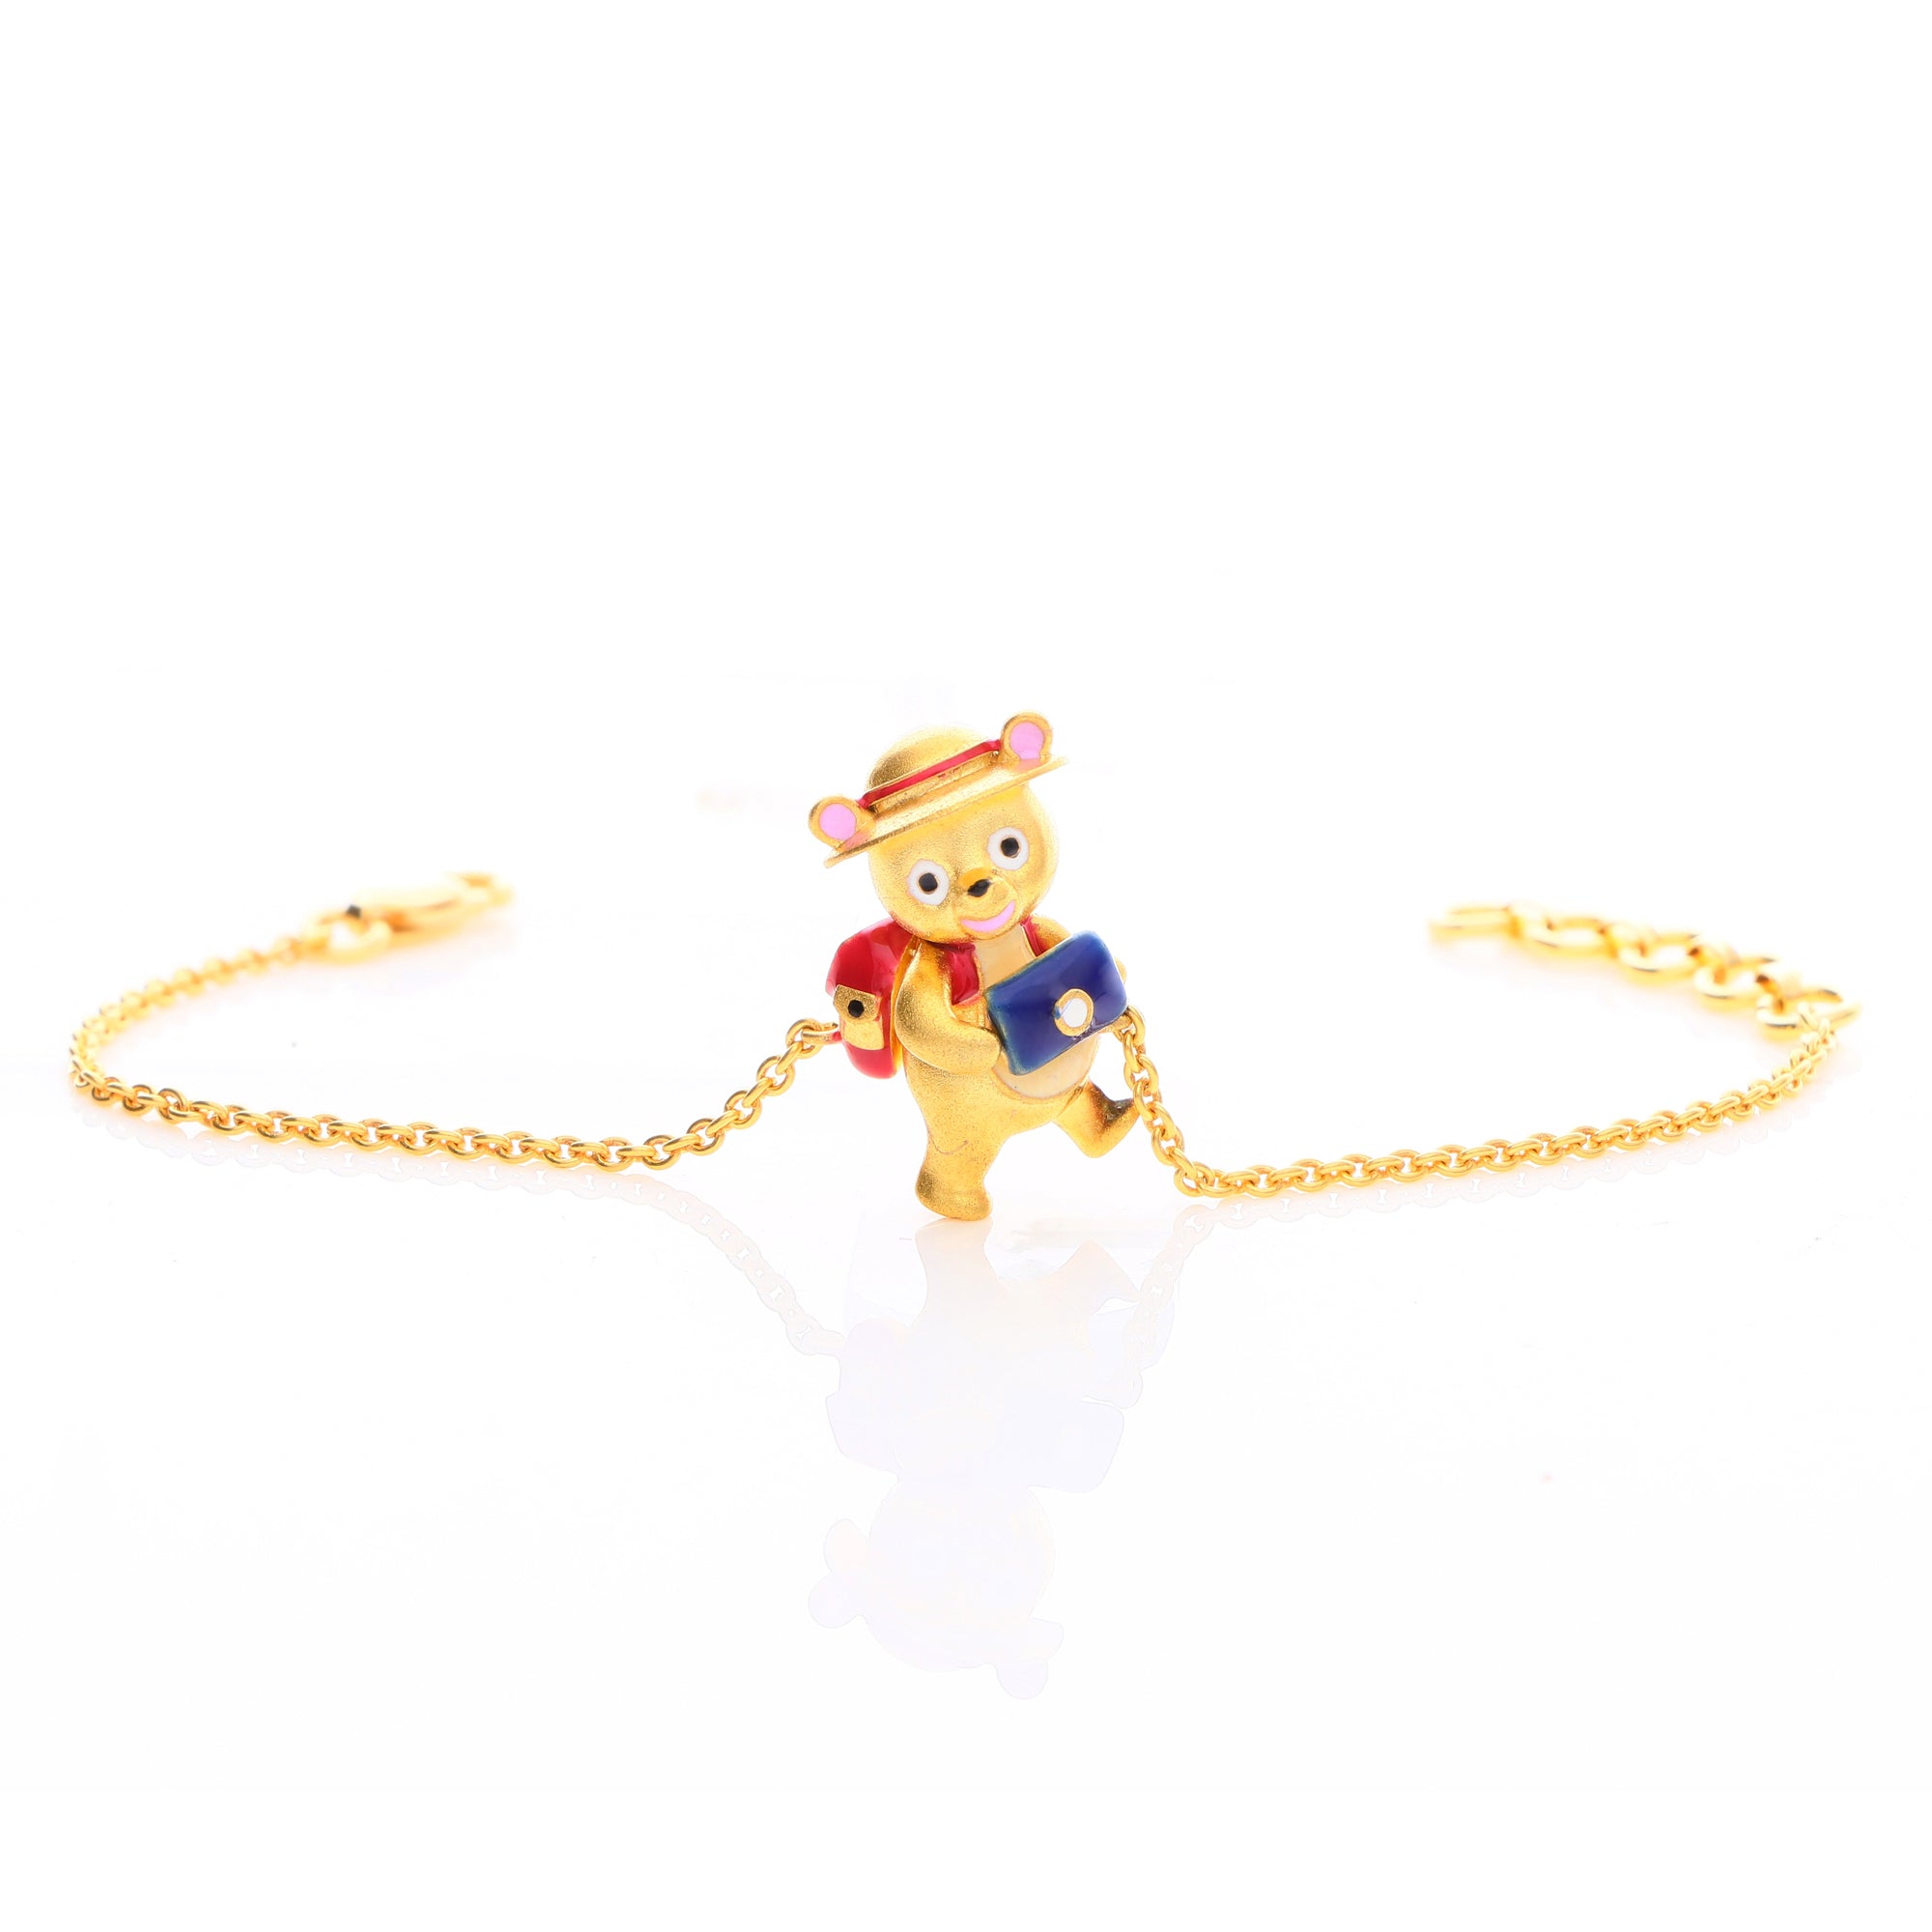 Tiny Teddy Charm Bracelet for Kids